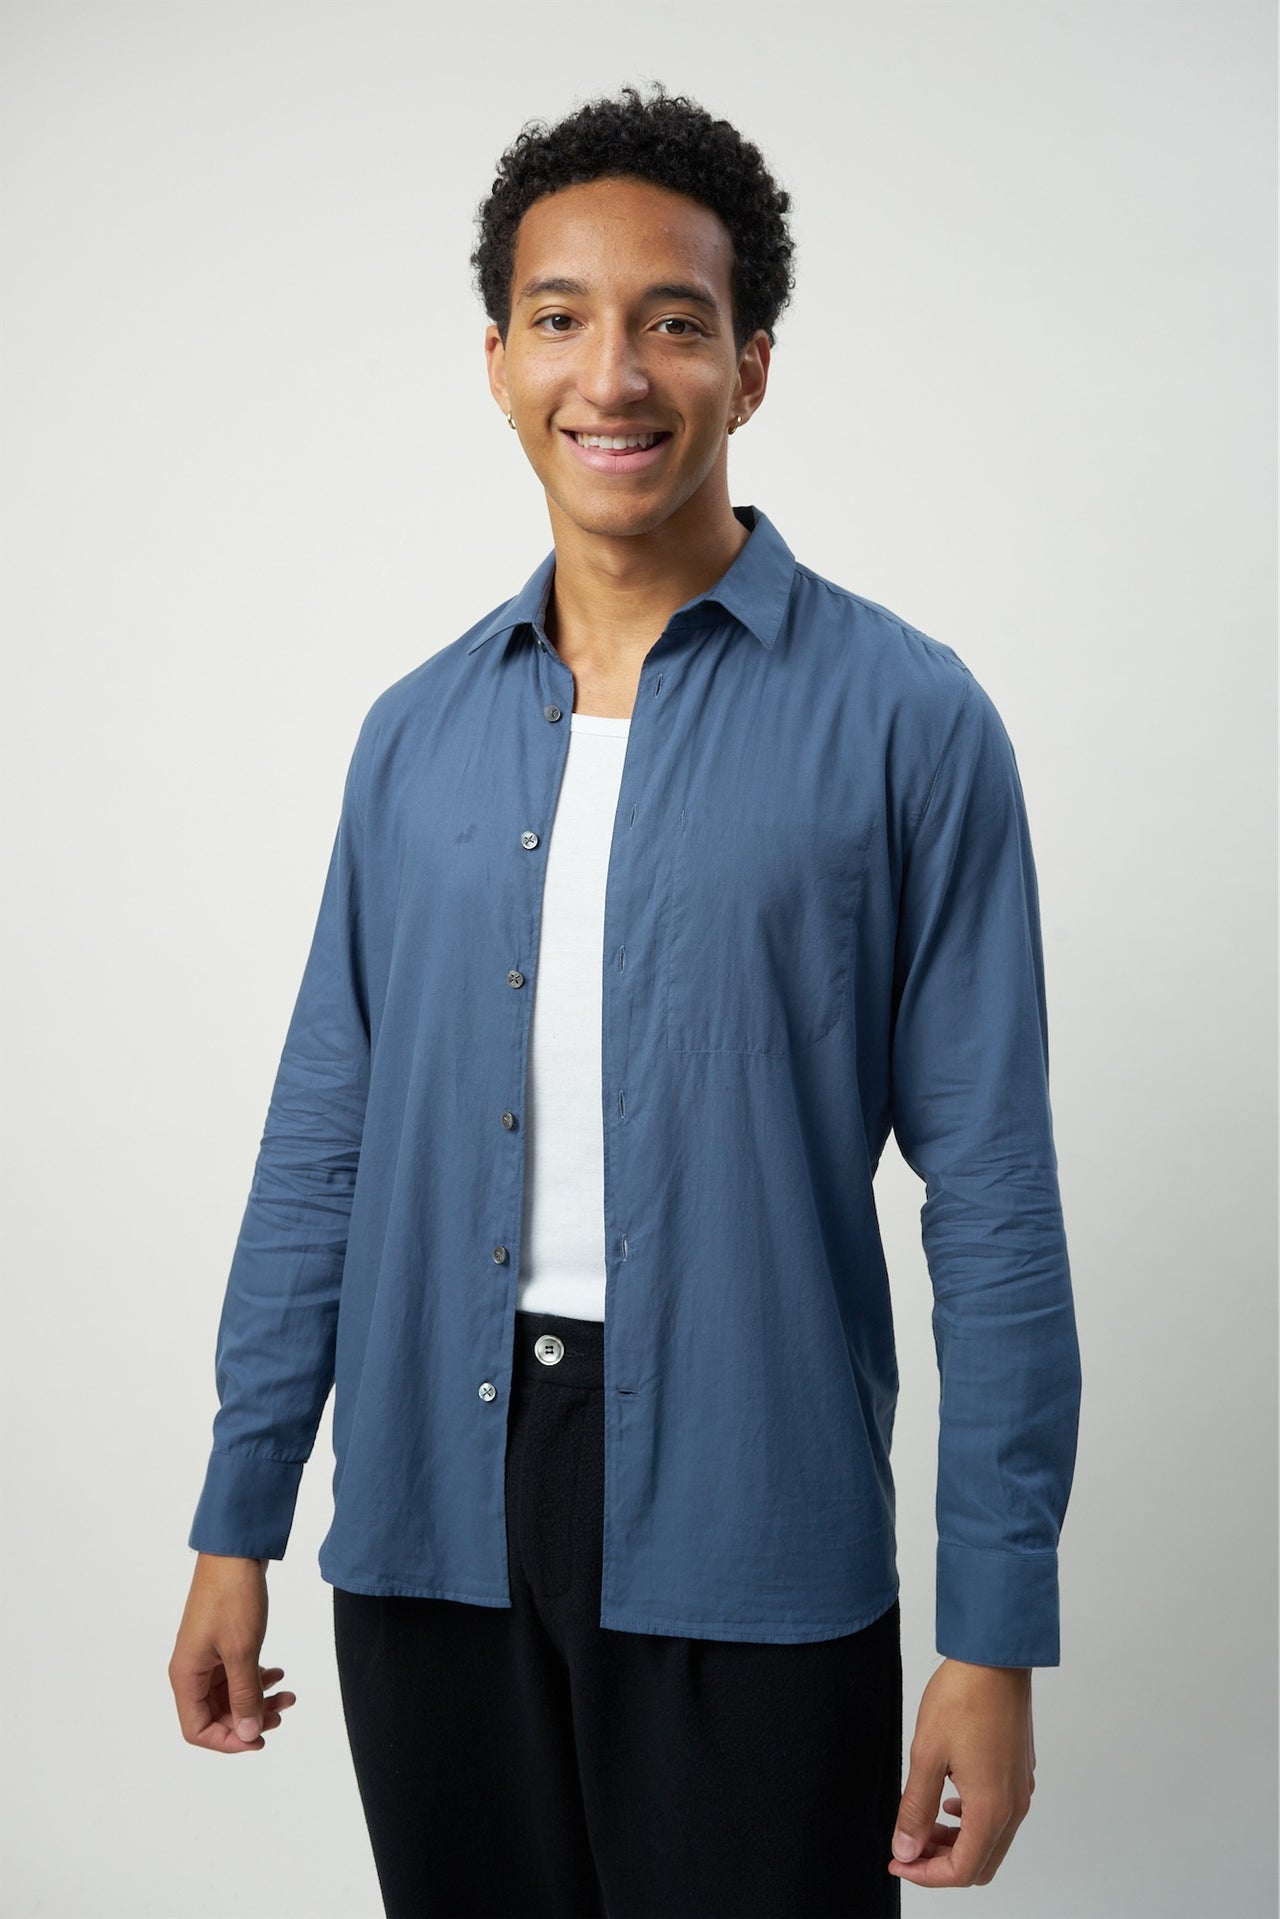 デニムブルーのソフトハイエンドエジプトナイルデルタギザ87イタリア織綿のFeel Goodシャツ